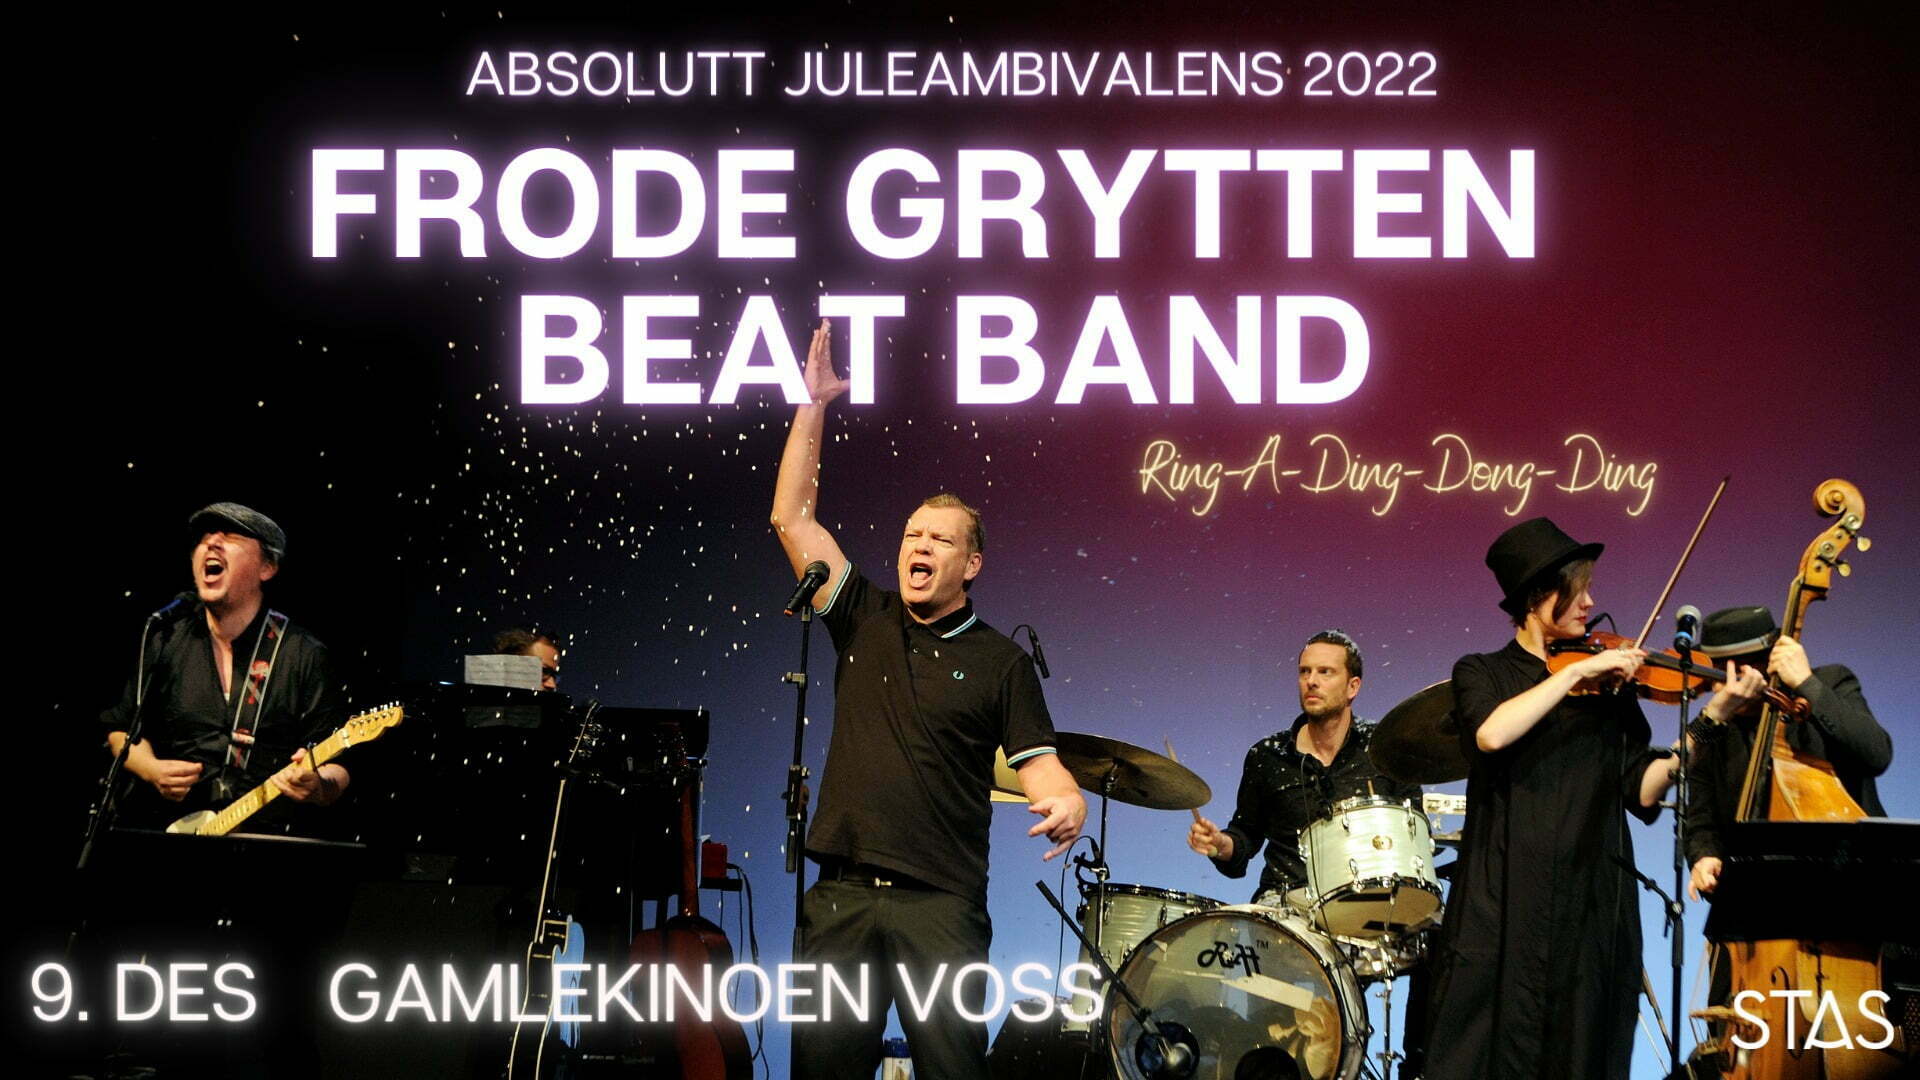 Frode Grytten Beat Band // Voss  - Stas 